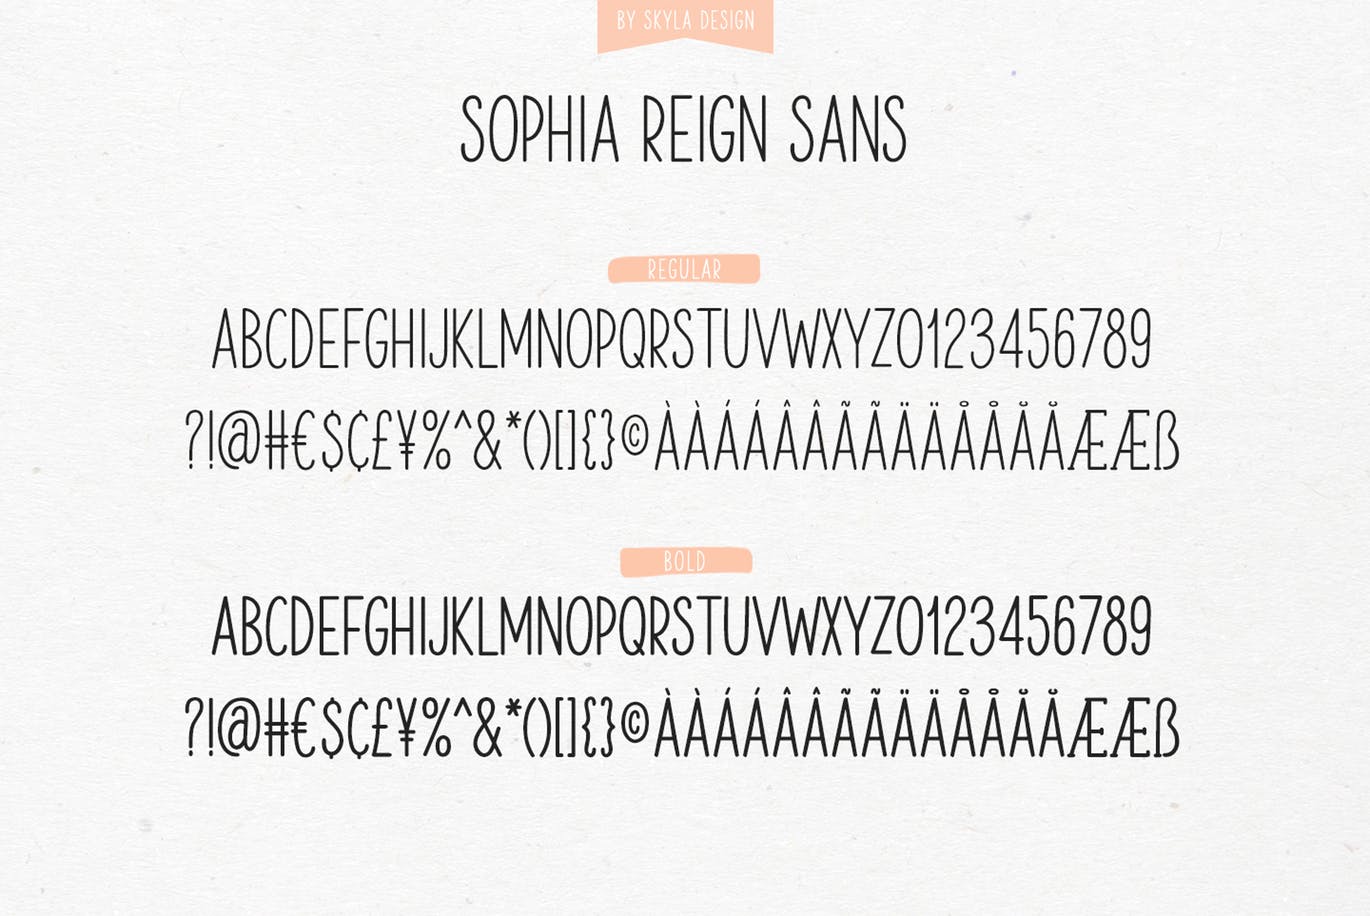 英文钢笔签名字体素材库精选&大写字母正楷字体素材库精选二重奏 Sophia Reign signature font duo插图(1)